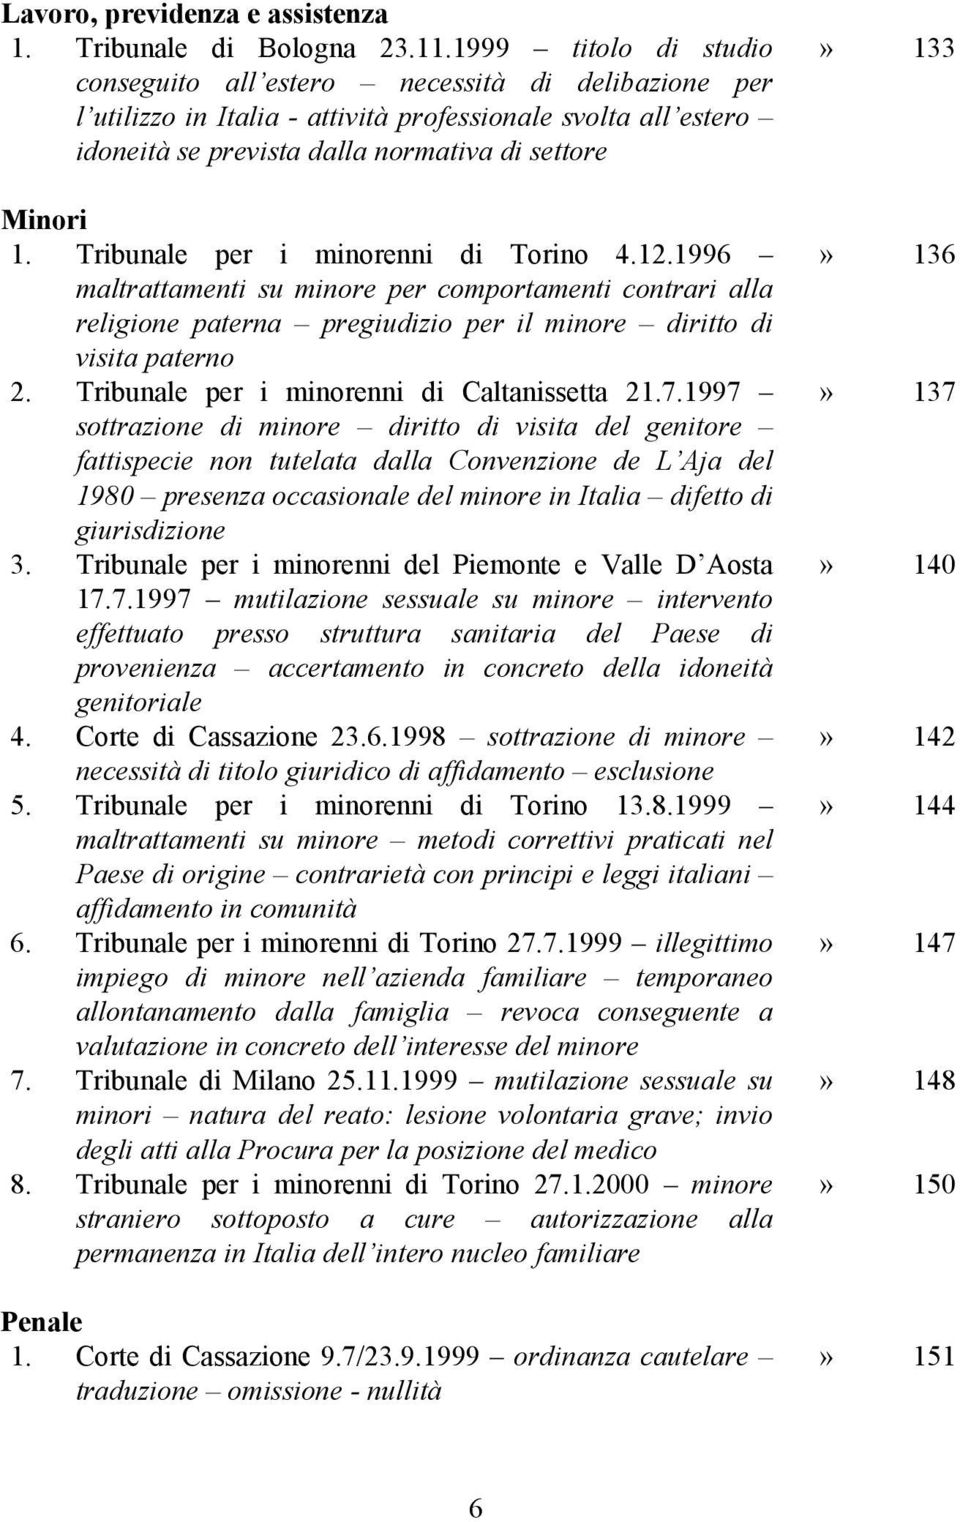 Tribunale per i minorenni di Torino 4.12.1996 maltrattamenti su minore per comportamenti contrari alla religione paterna pregiudizio per il minore diritto di visita paterno 2.